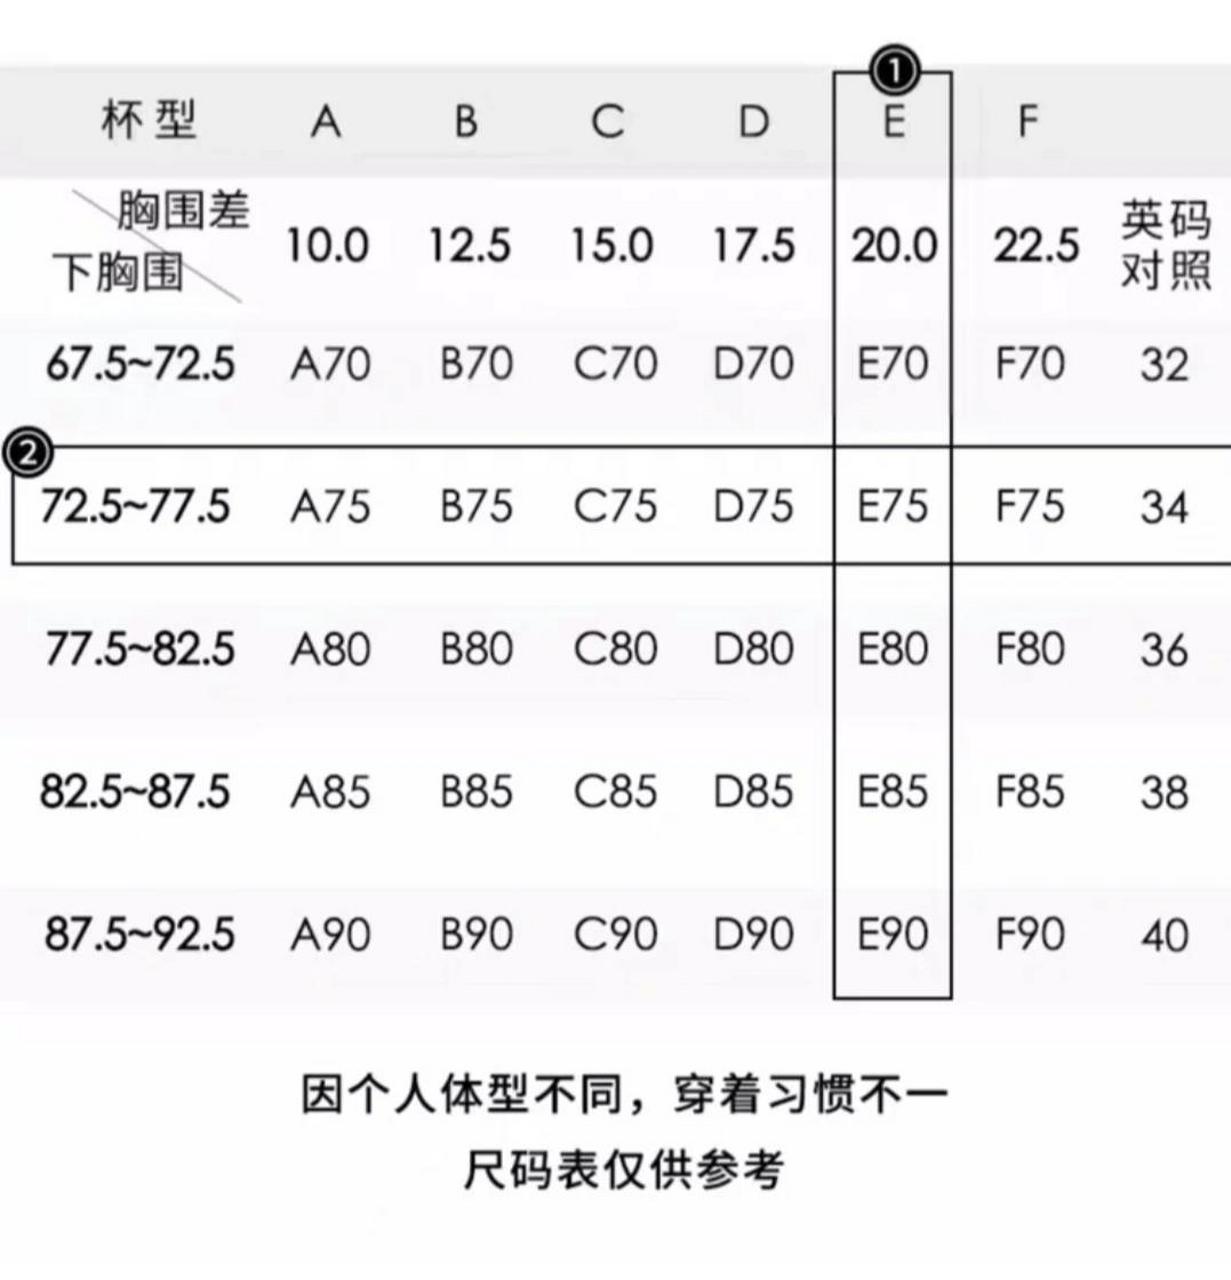 文胸尺码对照表 中国图片